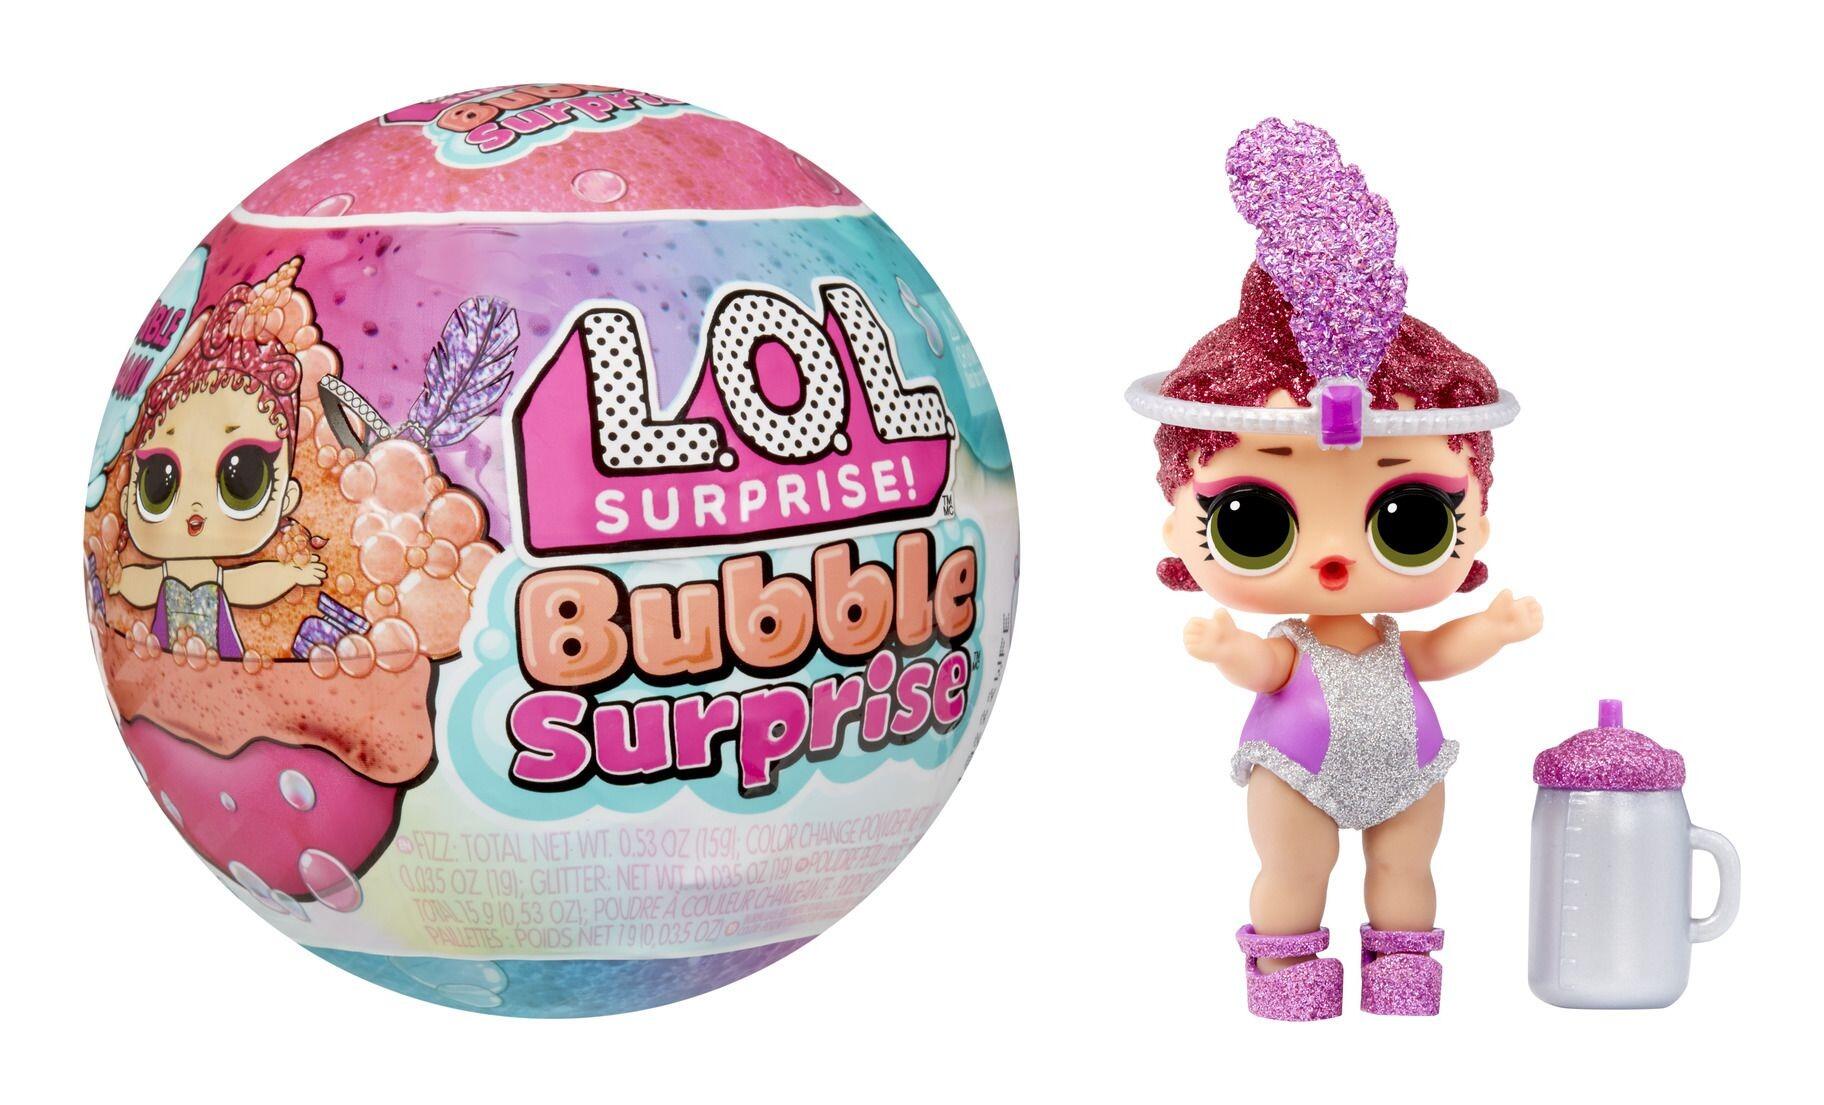 L.O.L Surprise Bubble Surprise Doll